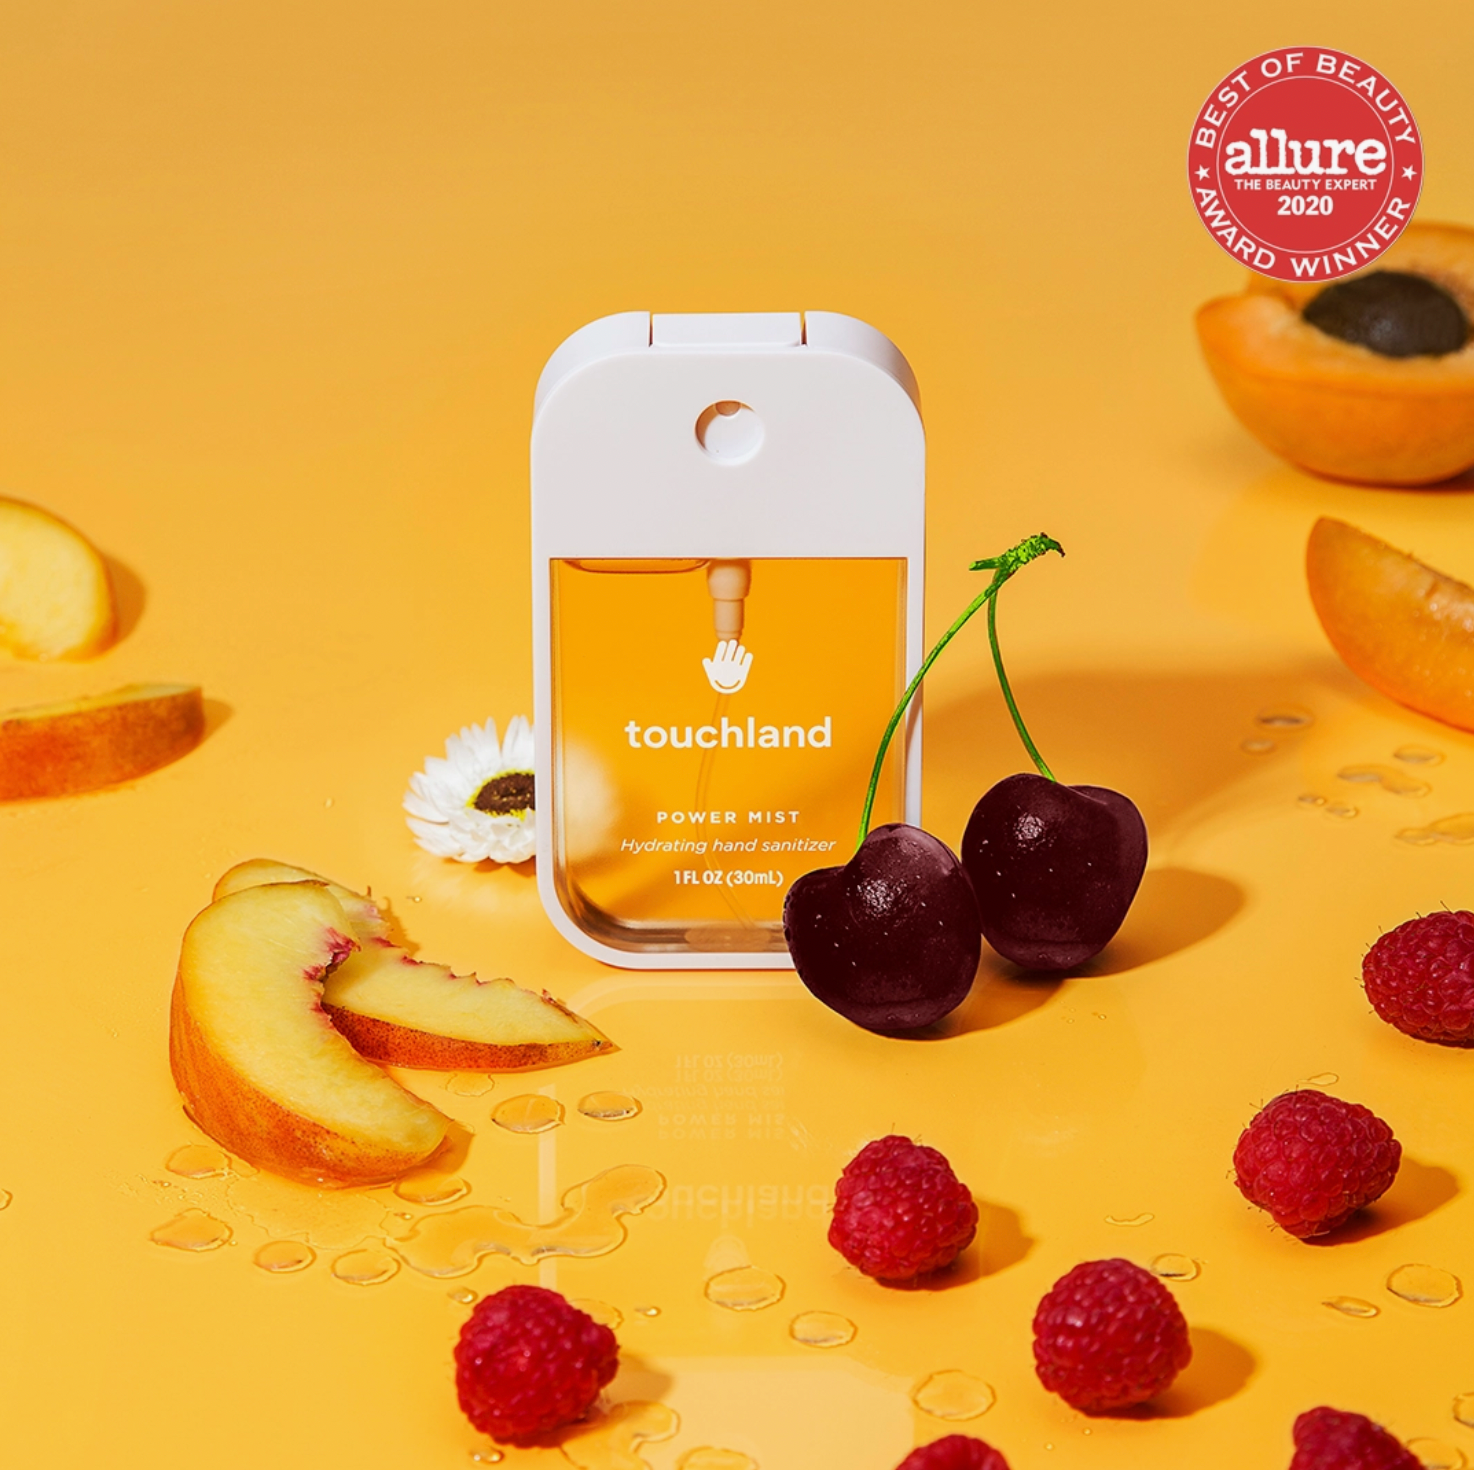 Velvet Peach Hand Sanitizer – Dalvey & Co